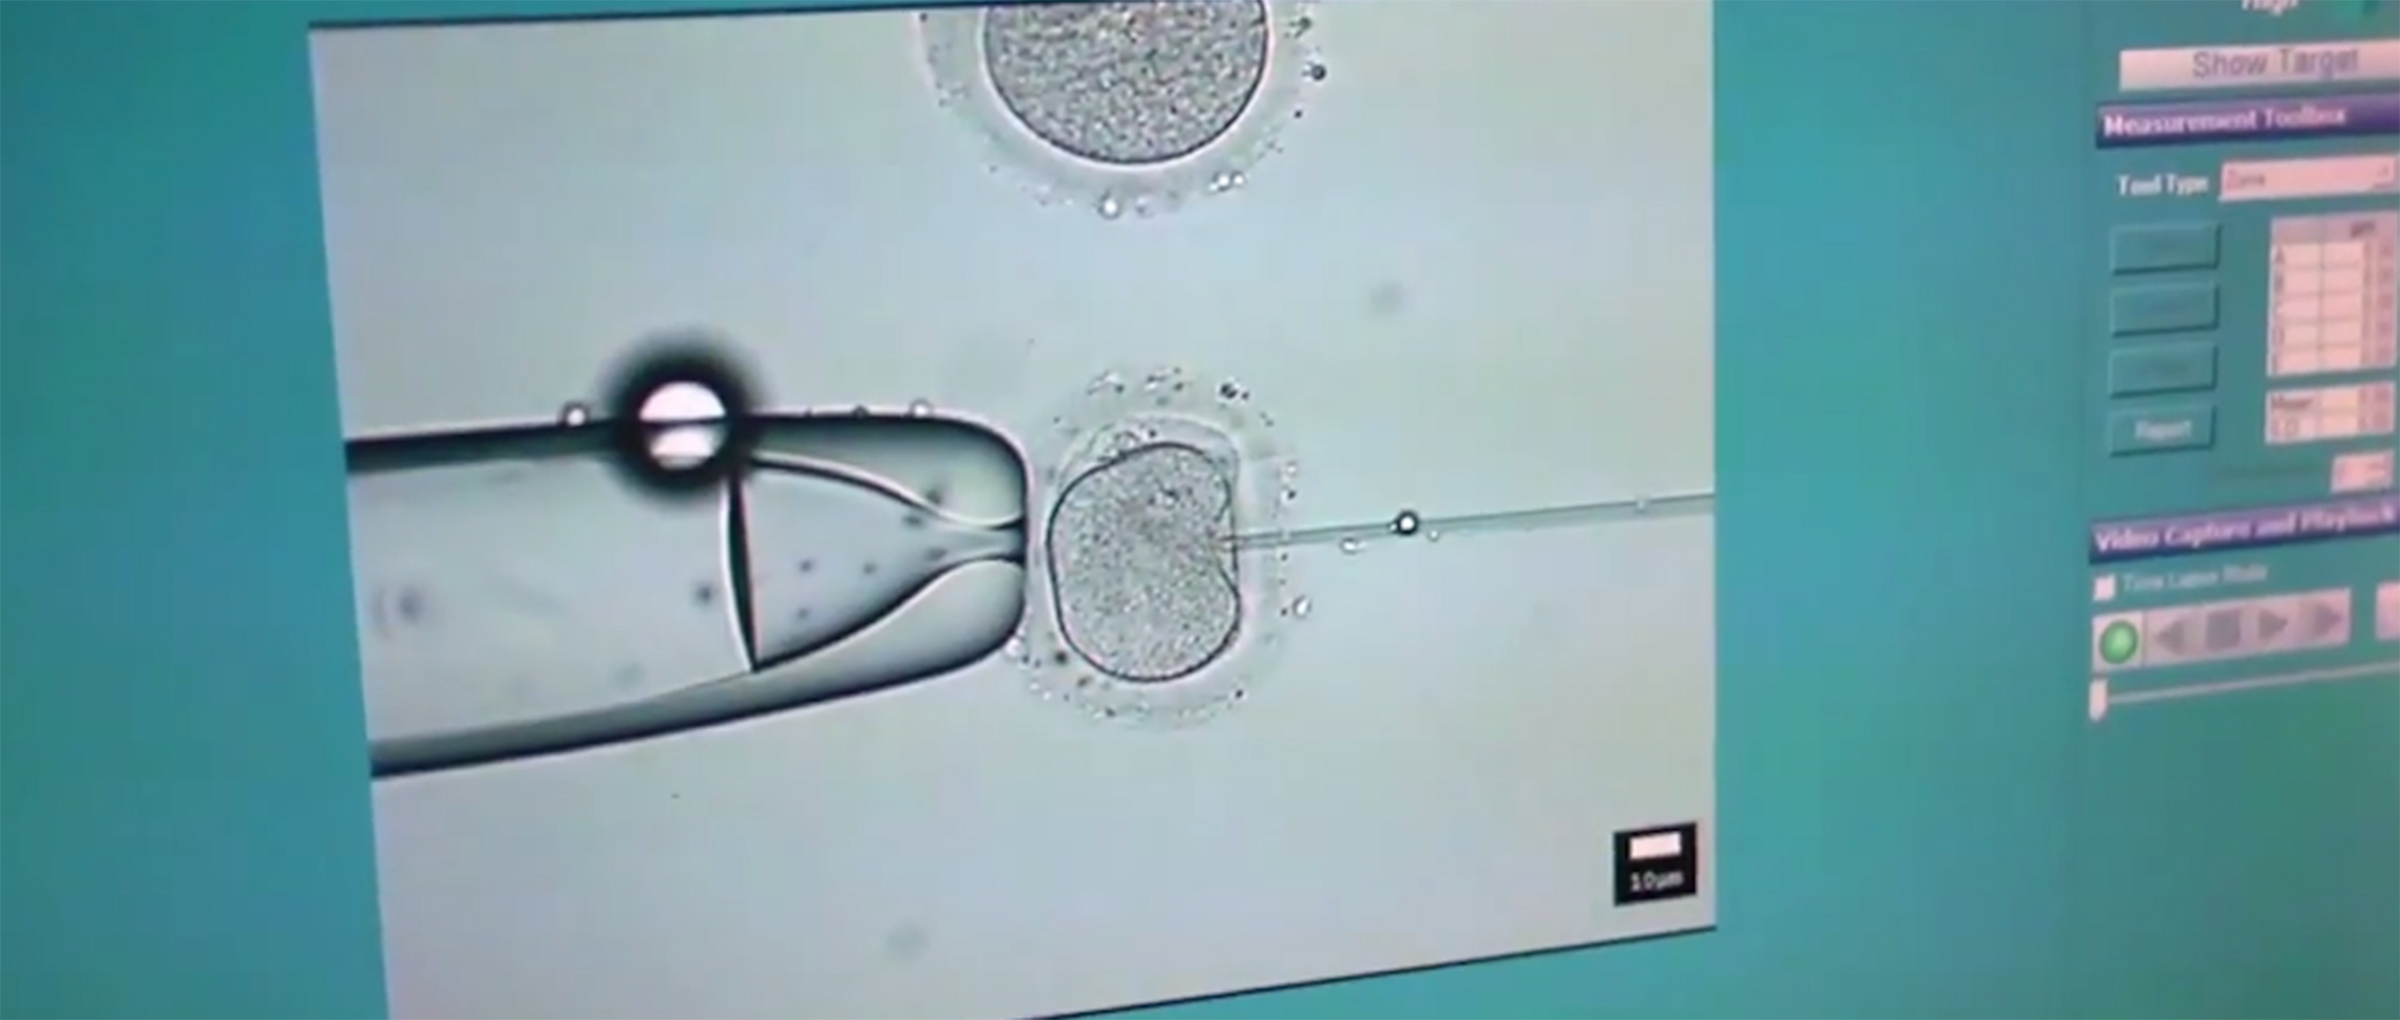 Analizar genéticamente los embriones antes de la transferencia